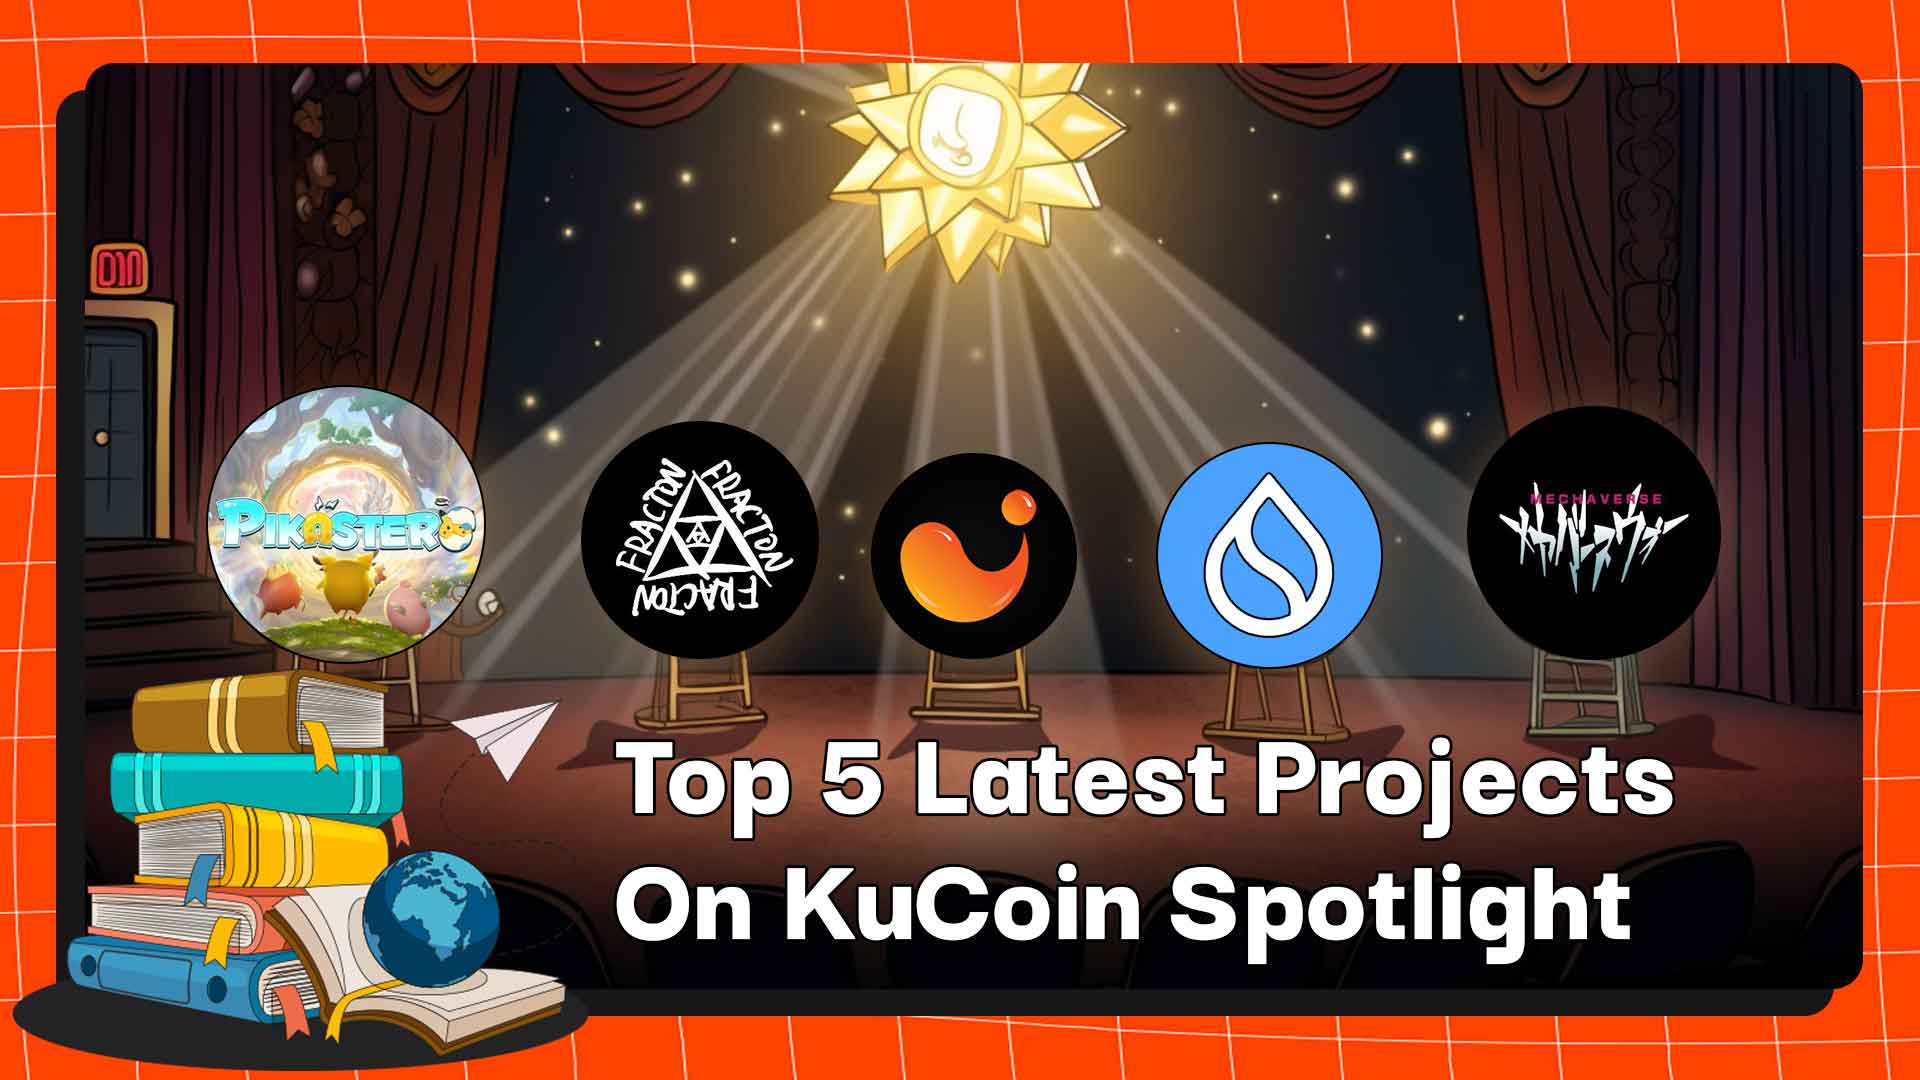 Top 5 Latest Projects On KuCoin Spotlight